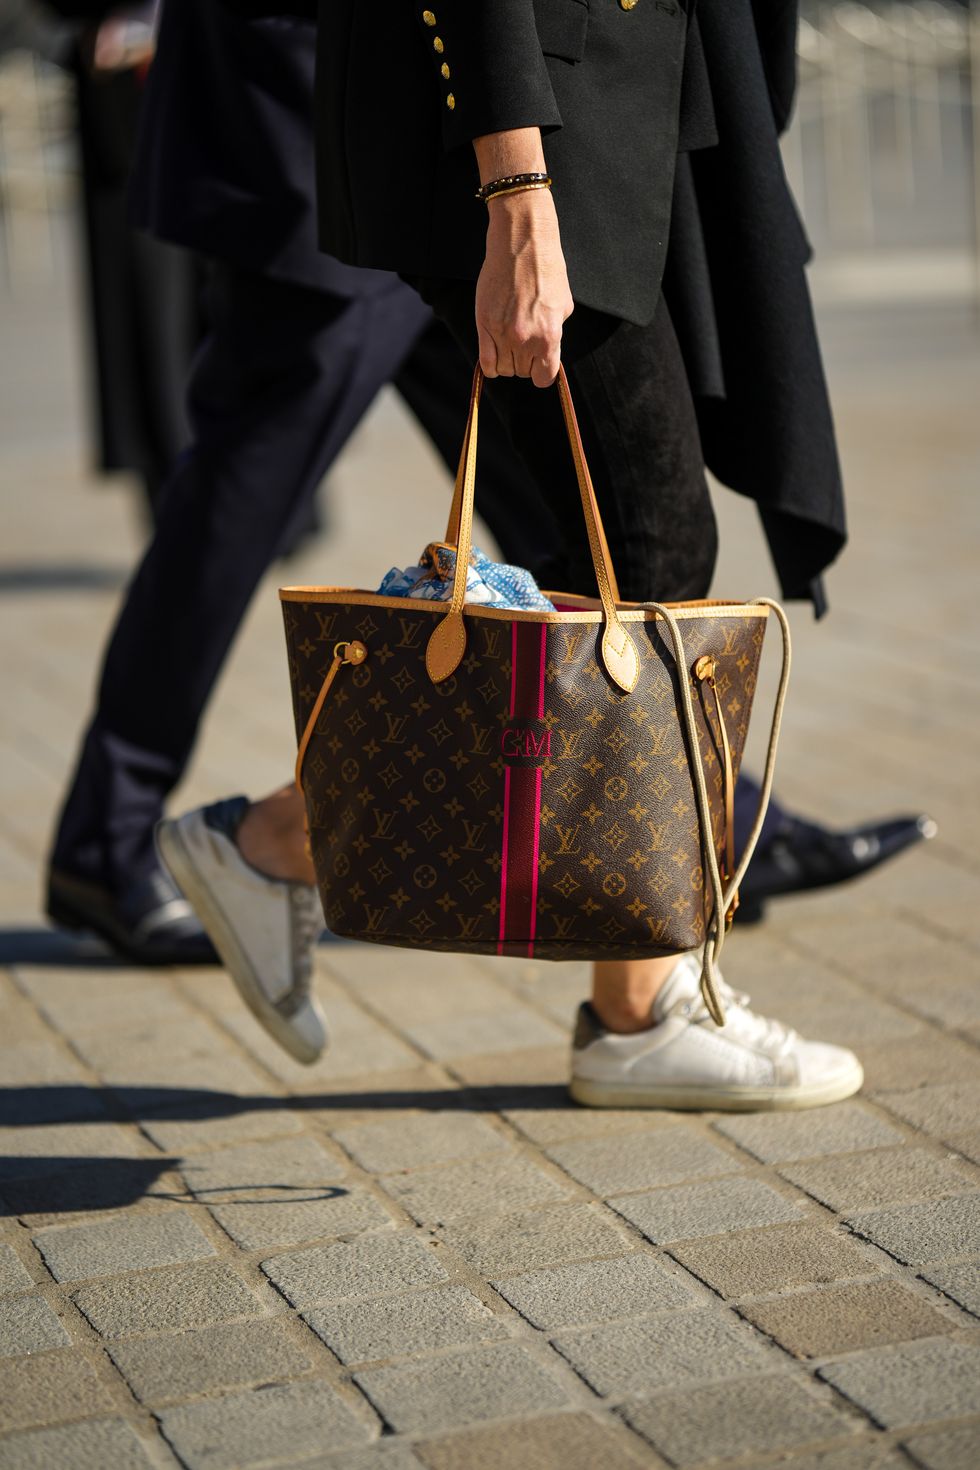 Borse Louis Vuitton: modelli iconici su cui investire dalla